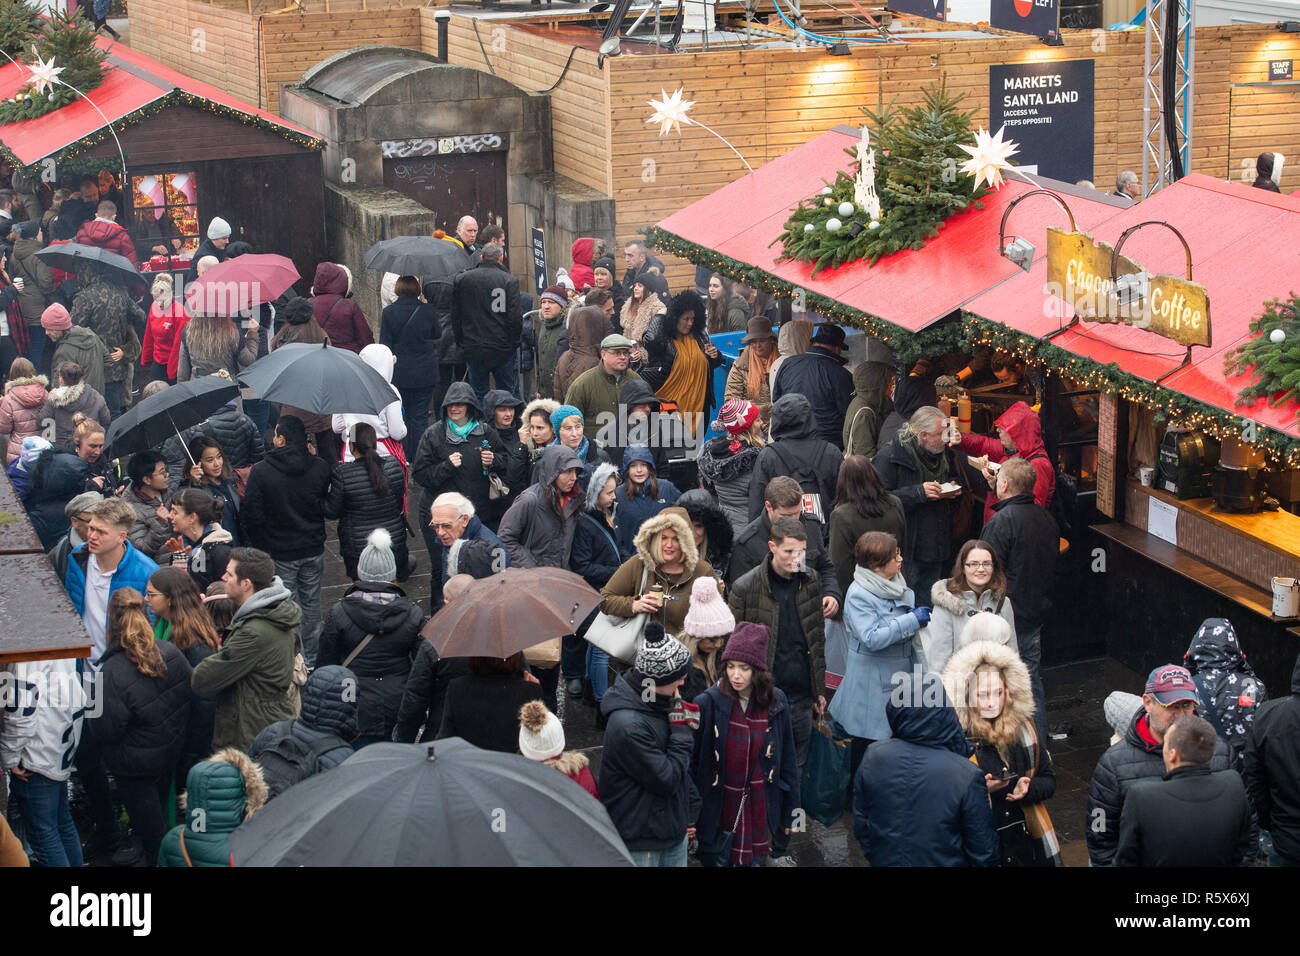 Marché de Noël d'Édimbourg, Princes Street Gardens, Noël, les foules, l'engorgement Banque D'Images